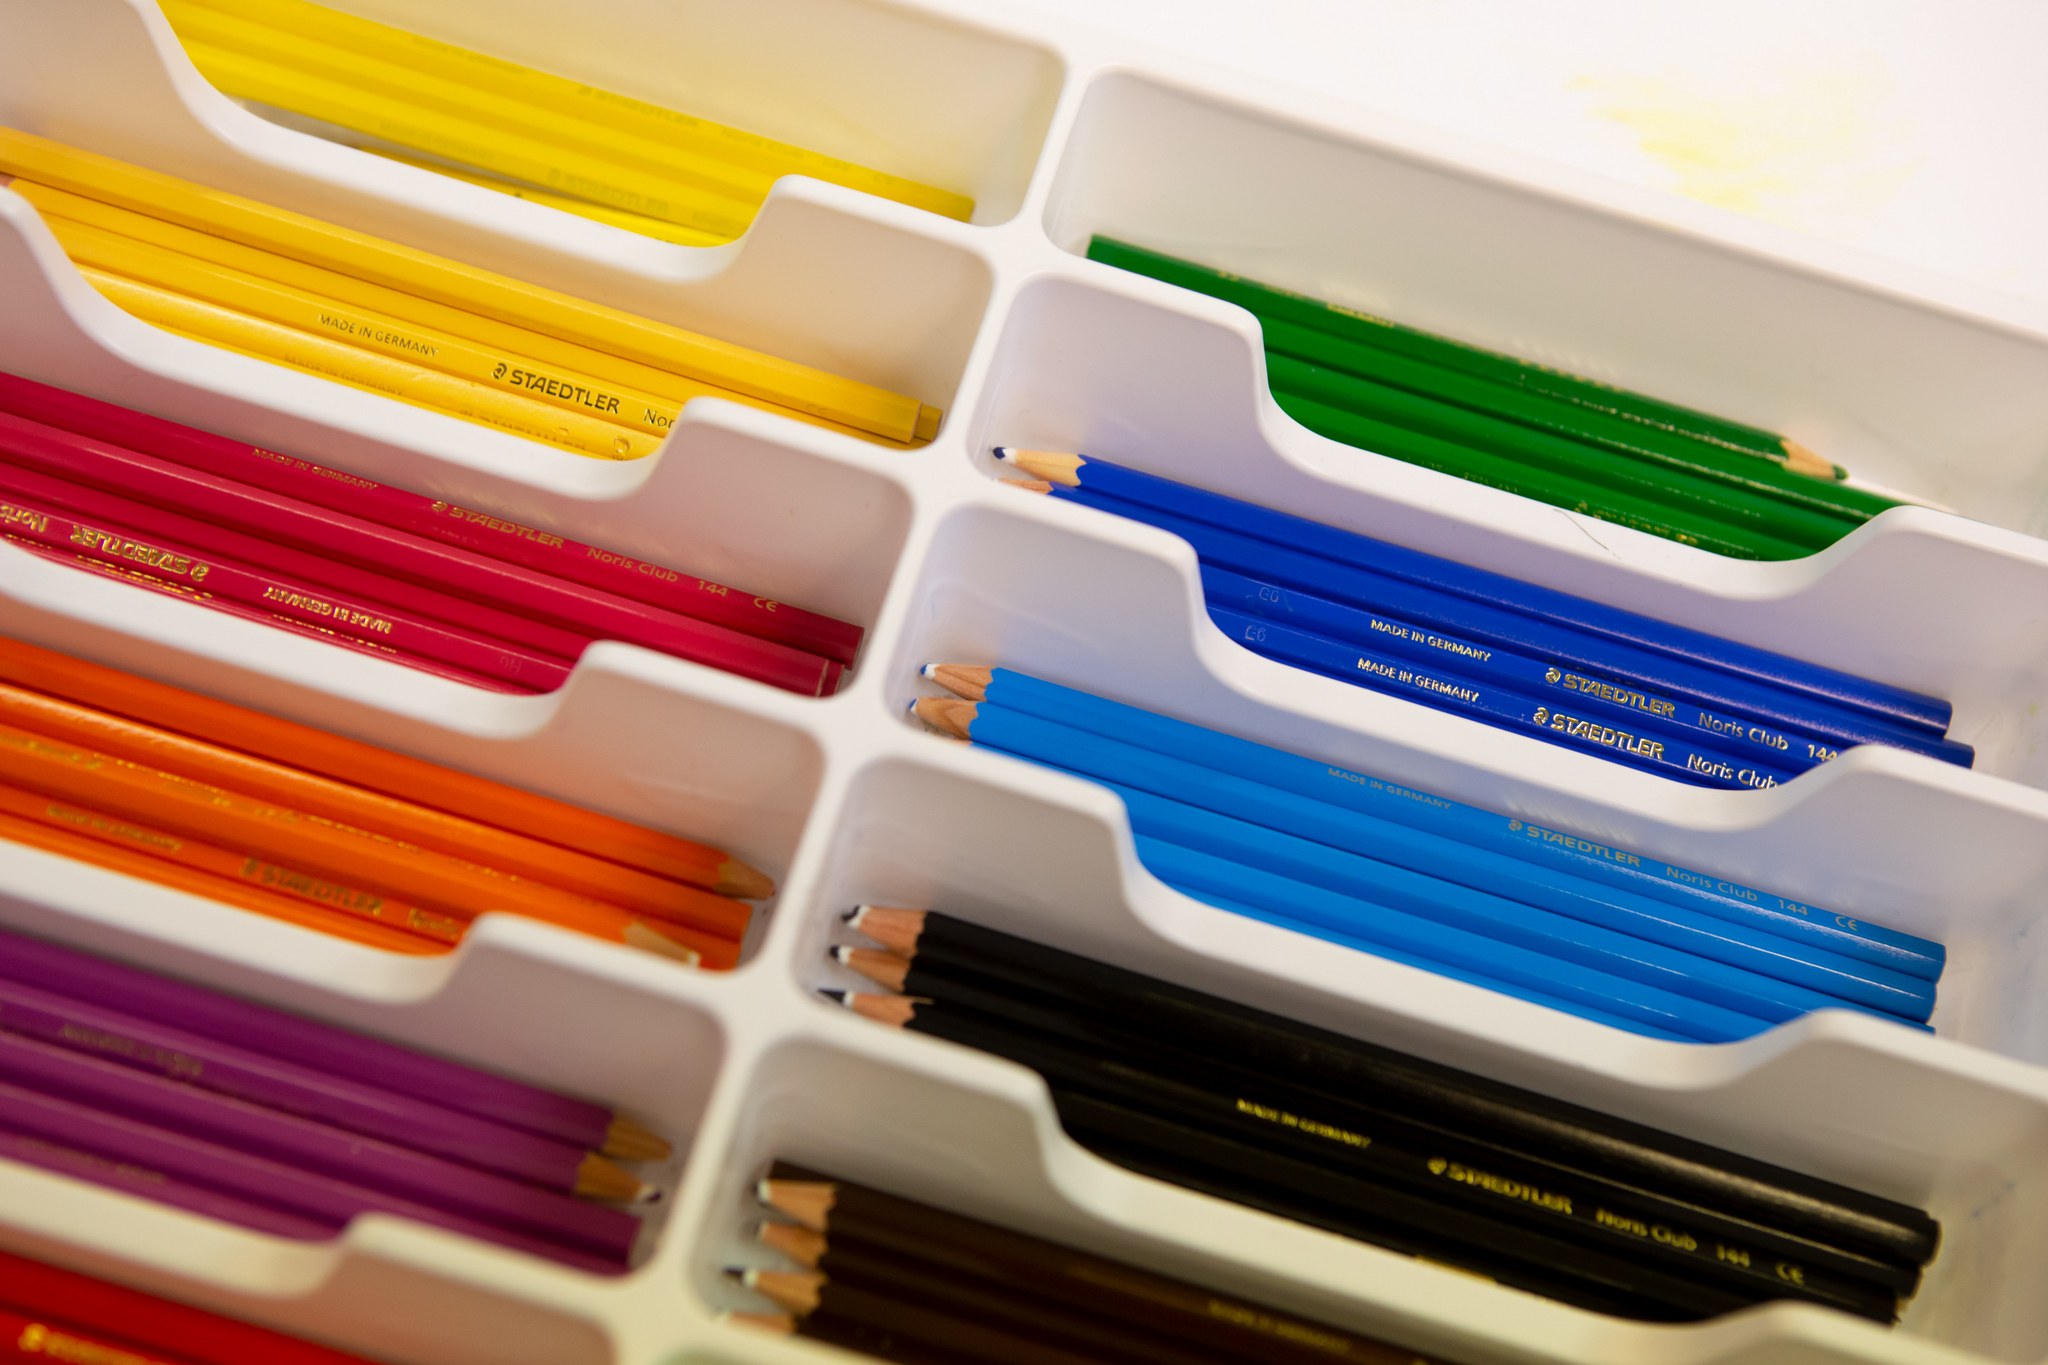 Eri värisiä kyniä lajiteltua kynälaatikkoon.